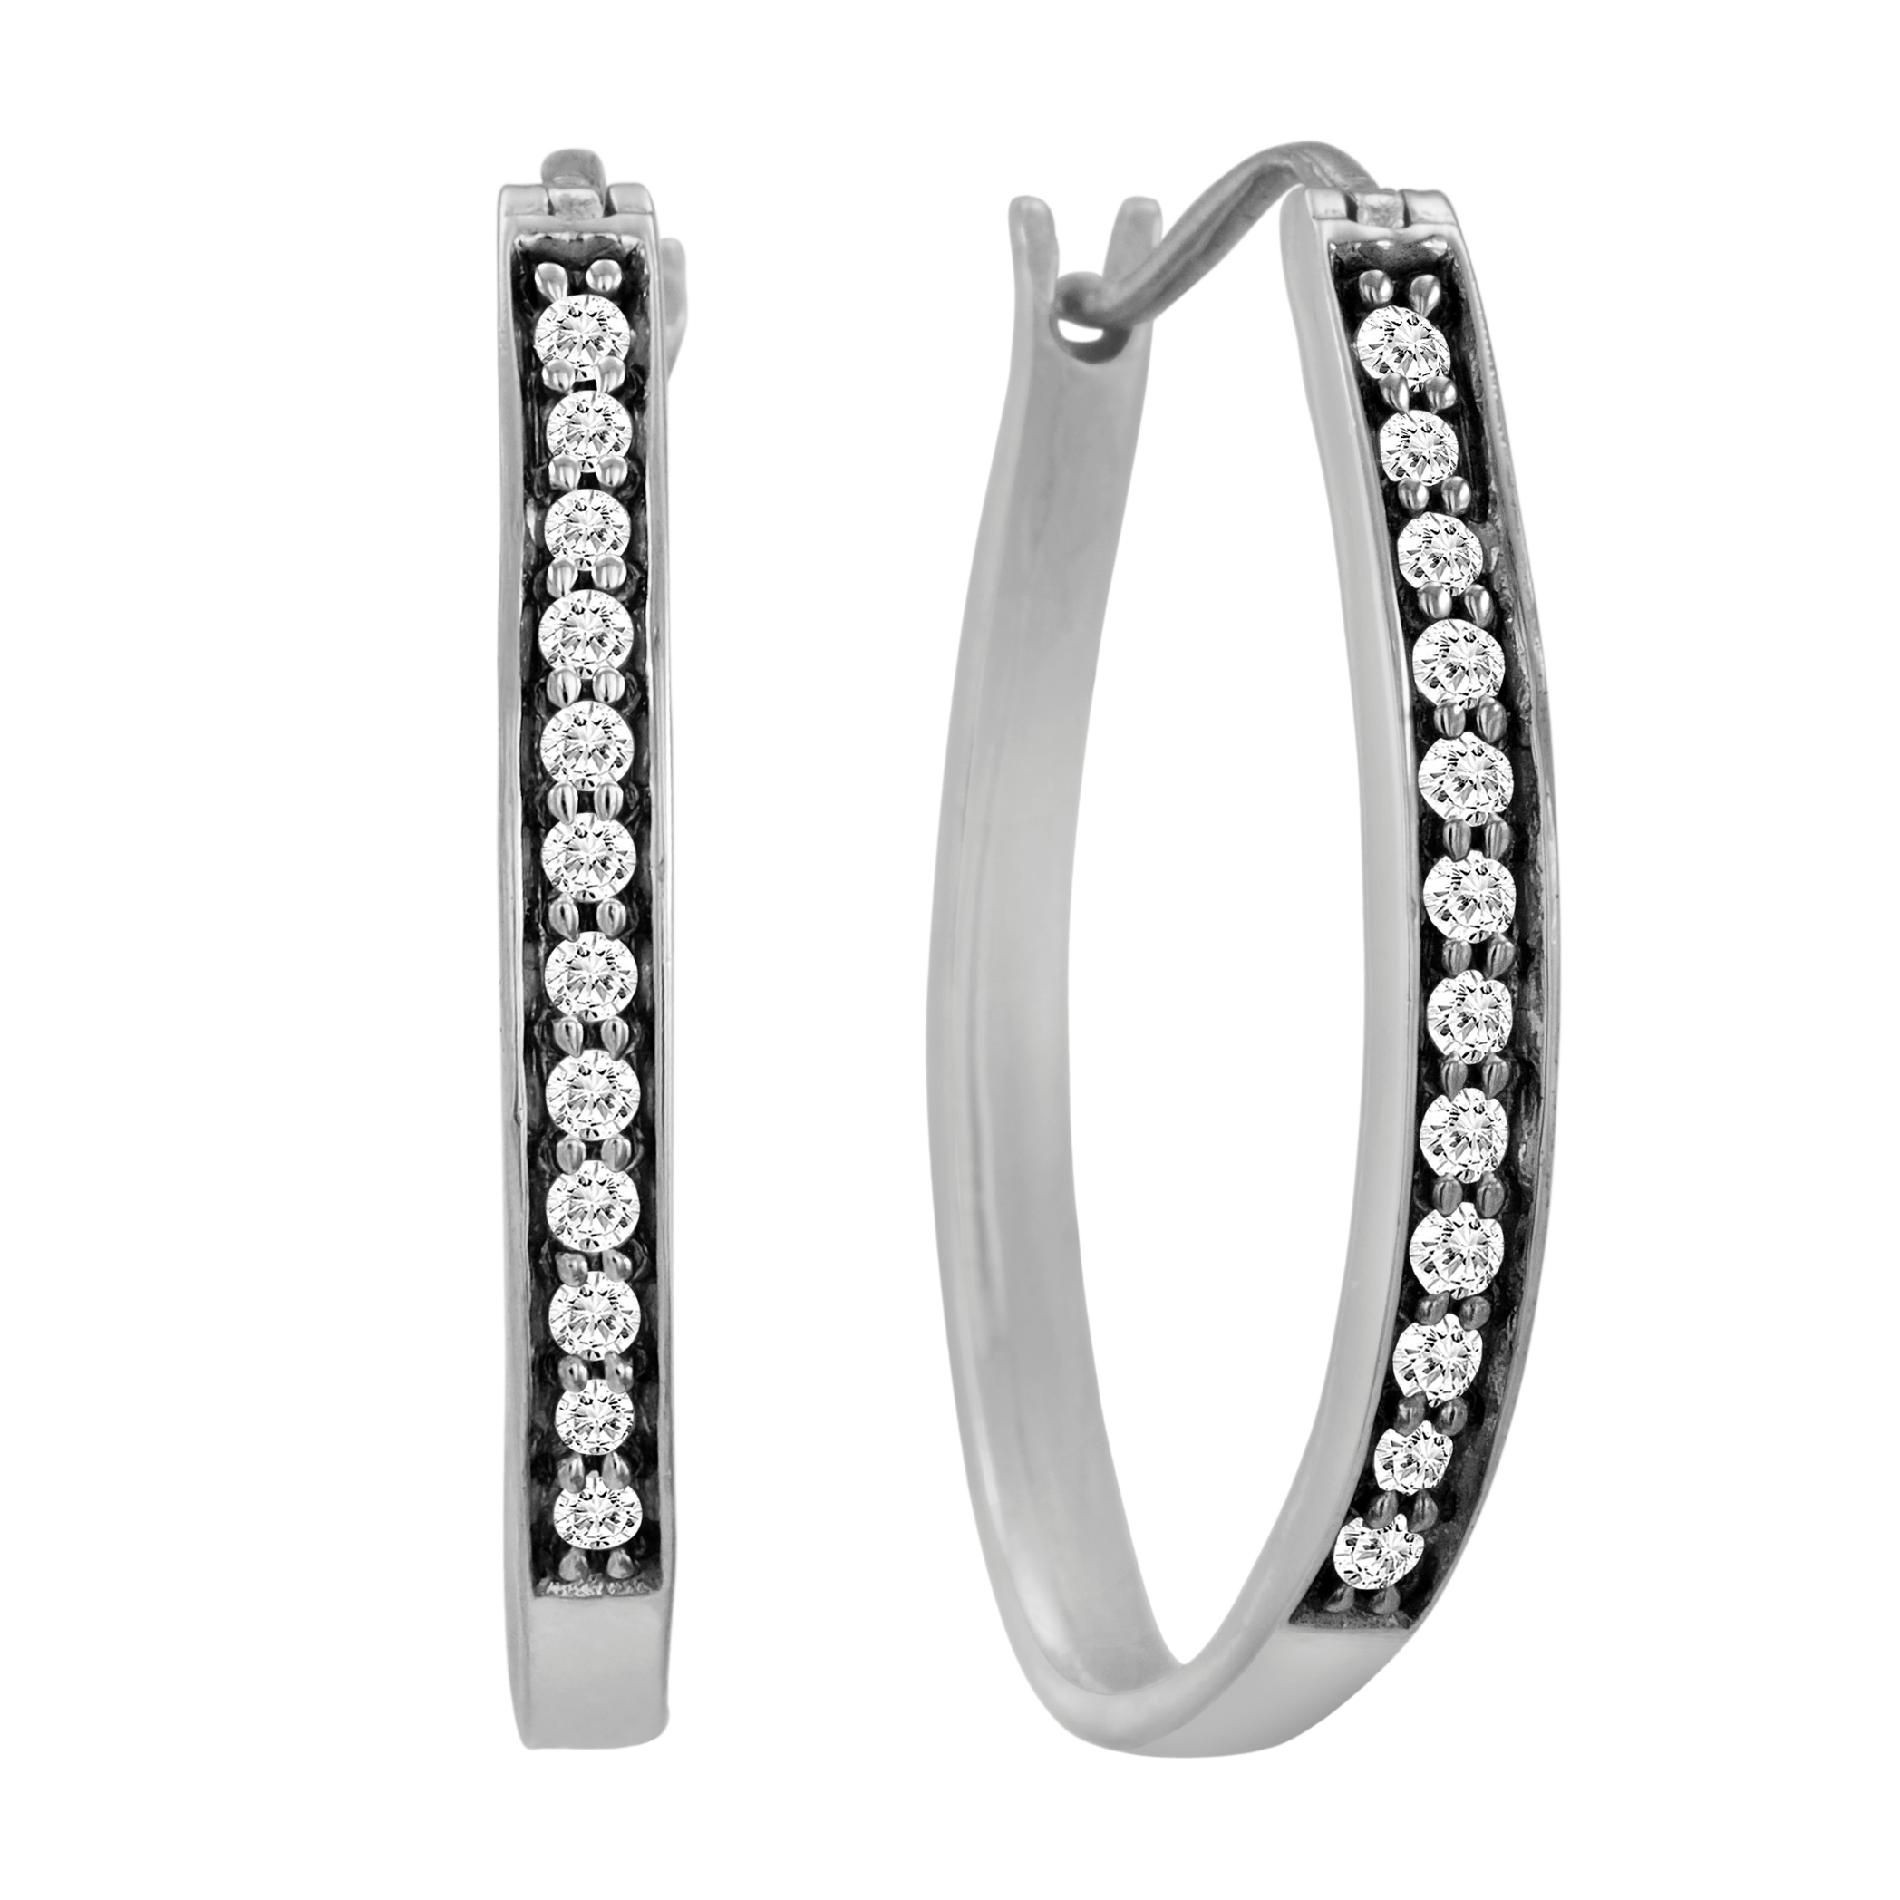 Kmart Jewelry Bracelets
 1 2 Cttw Diamond Hoop Earrings Sterling Silver Fine